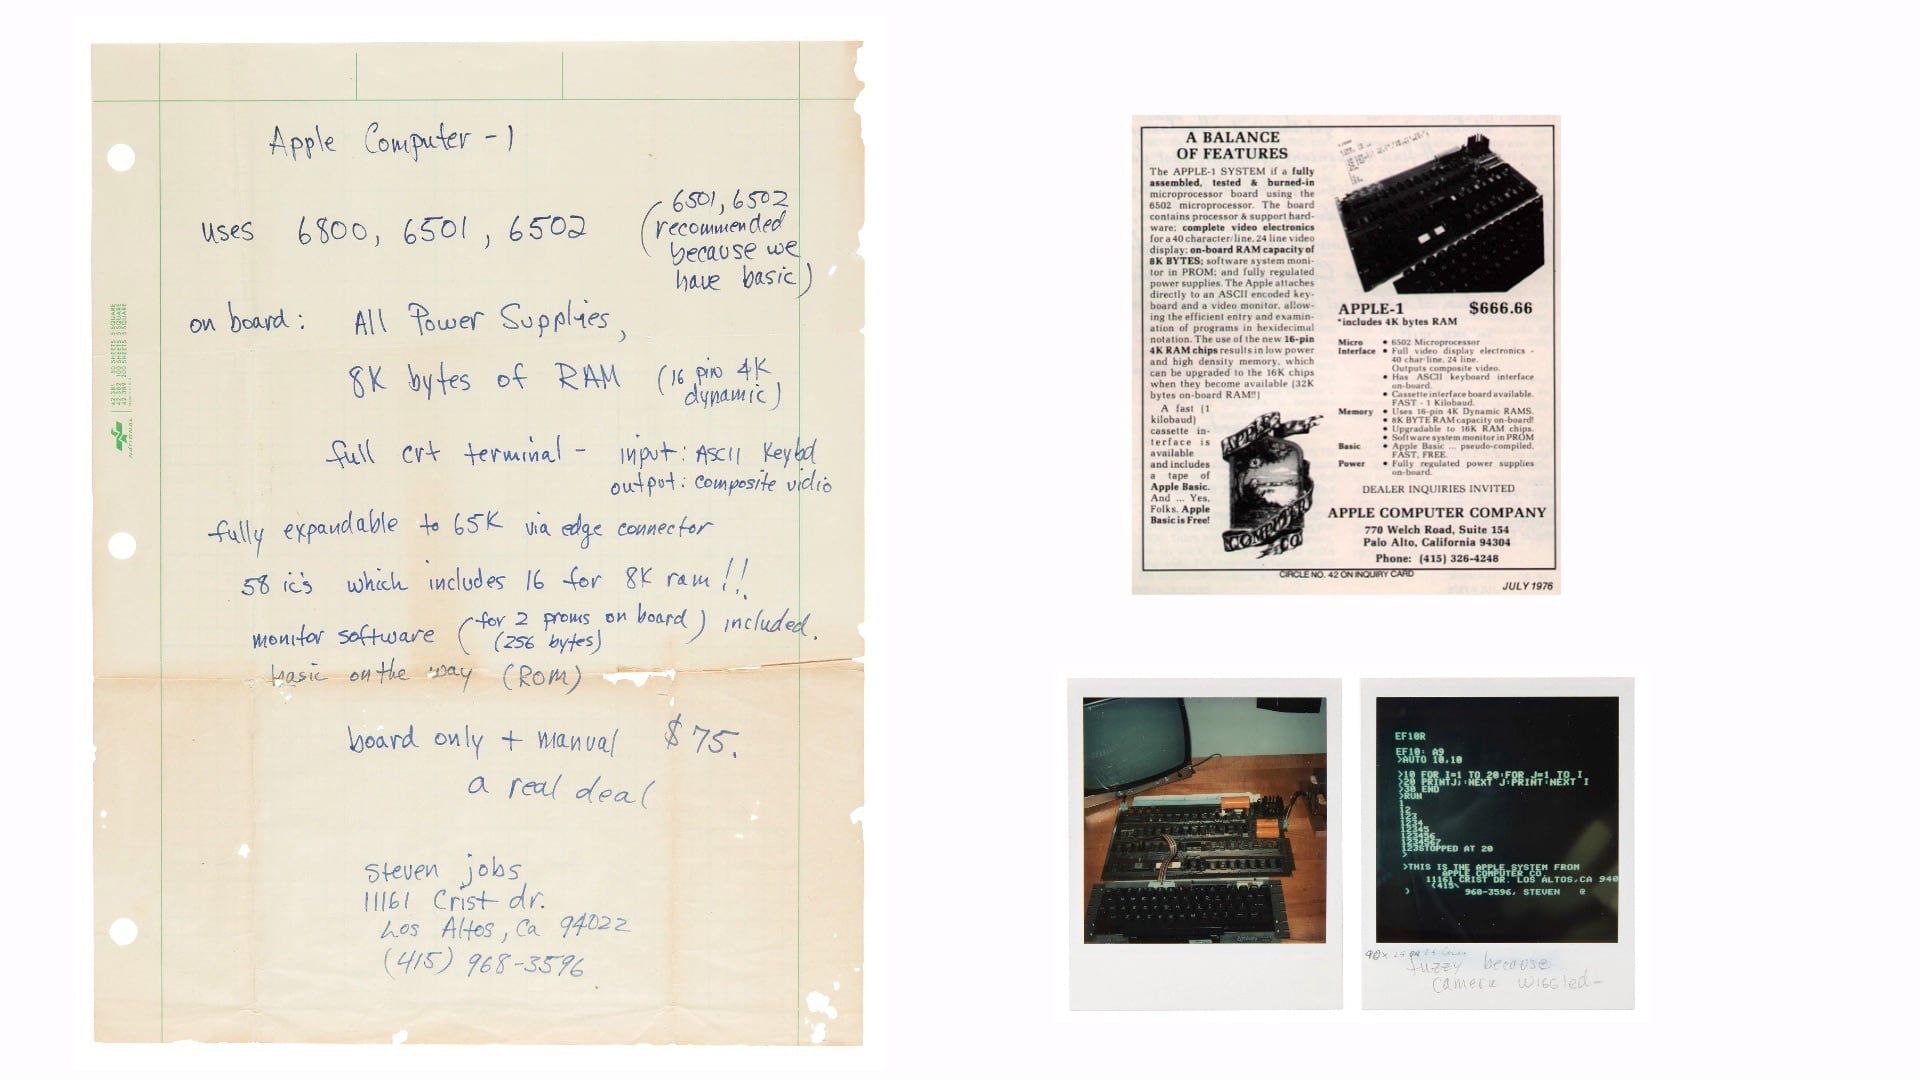 Apple-1 datorannons skriven av Steve Jobs såld på auktion för 175 000 dollar